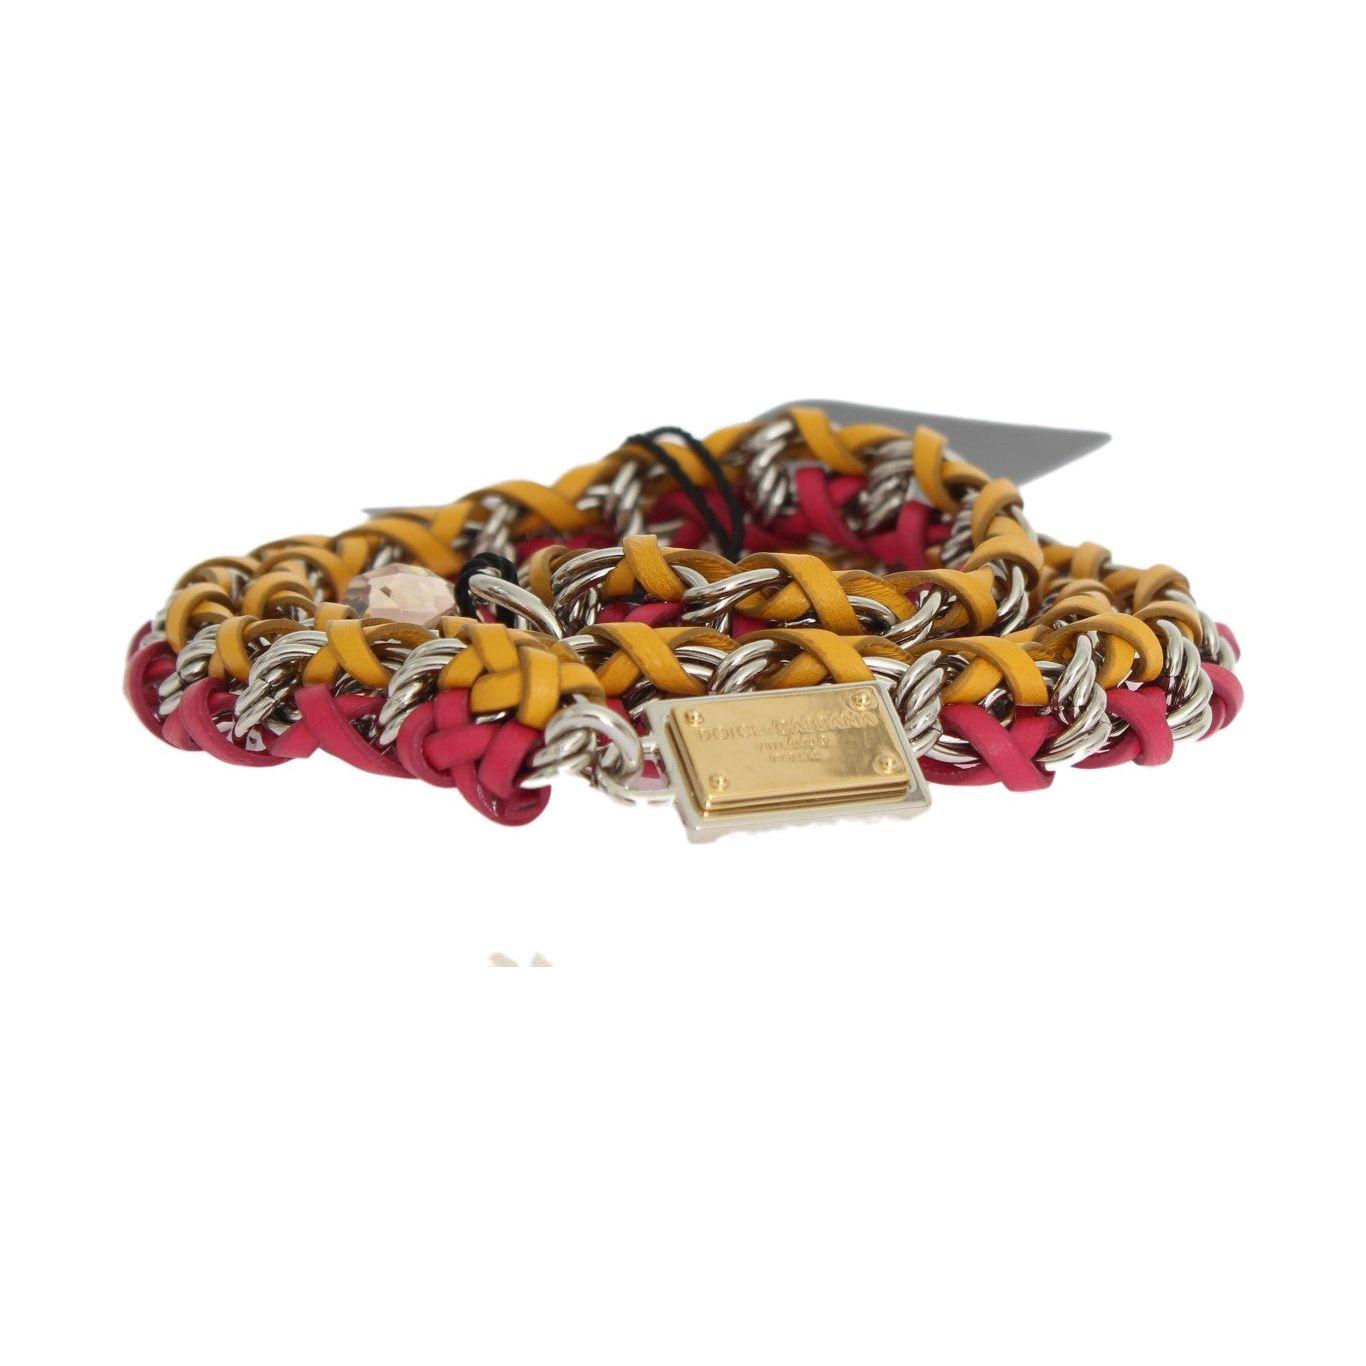 Dolce & Gabbana Elegant Multicolor Crystal-Embellished Belt Belt red-yellow-leather-crystal-belt 473811-red-yellow-leather-crystal-belt-5.jpg